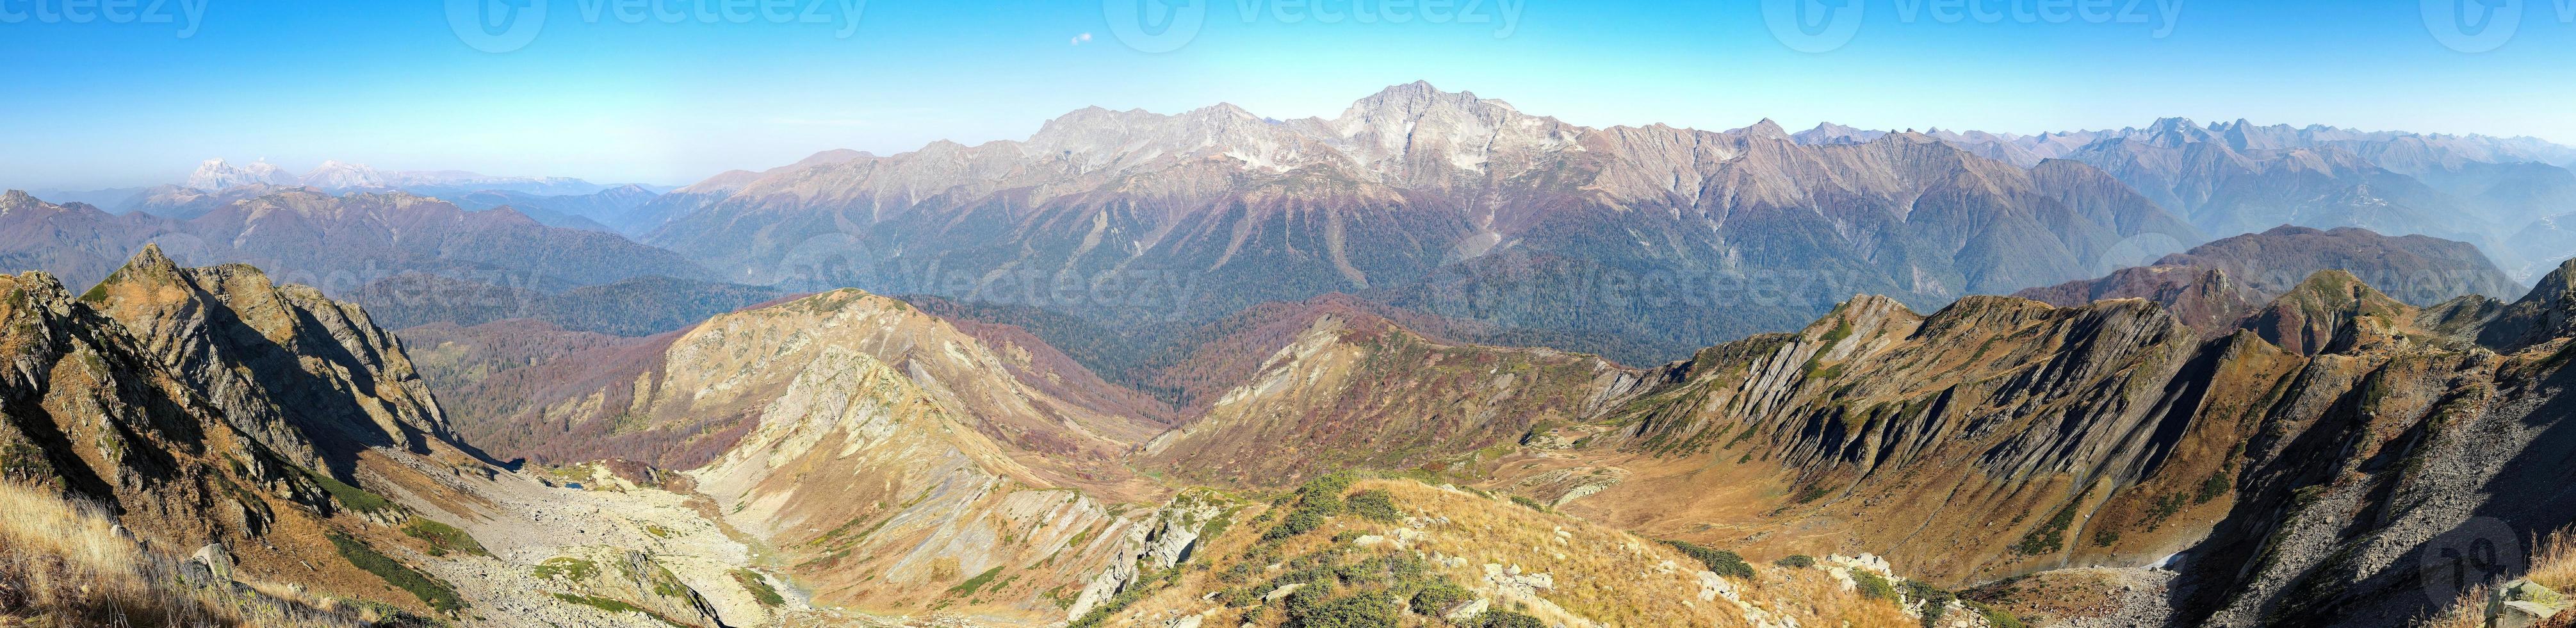 vue panoramique sur la chaîne de montagnes depuis le sommet de la montagne achisho, sotchi, russie photo